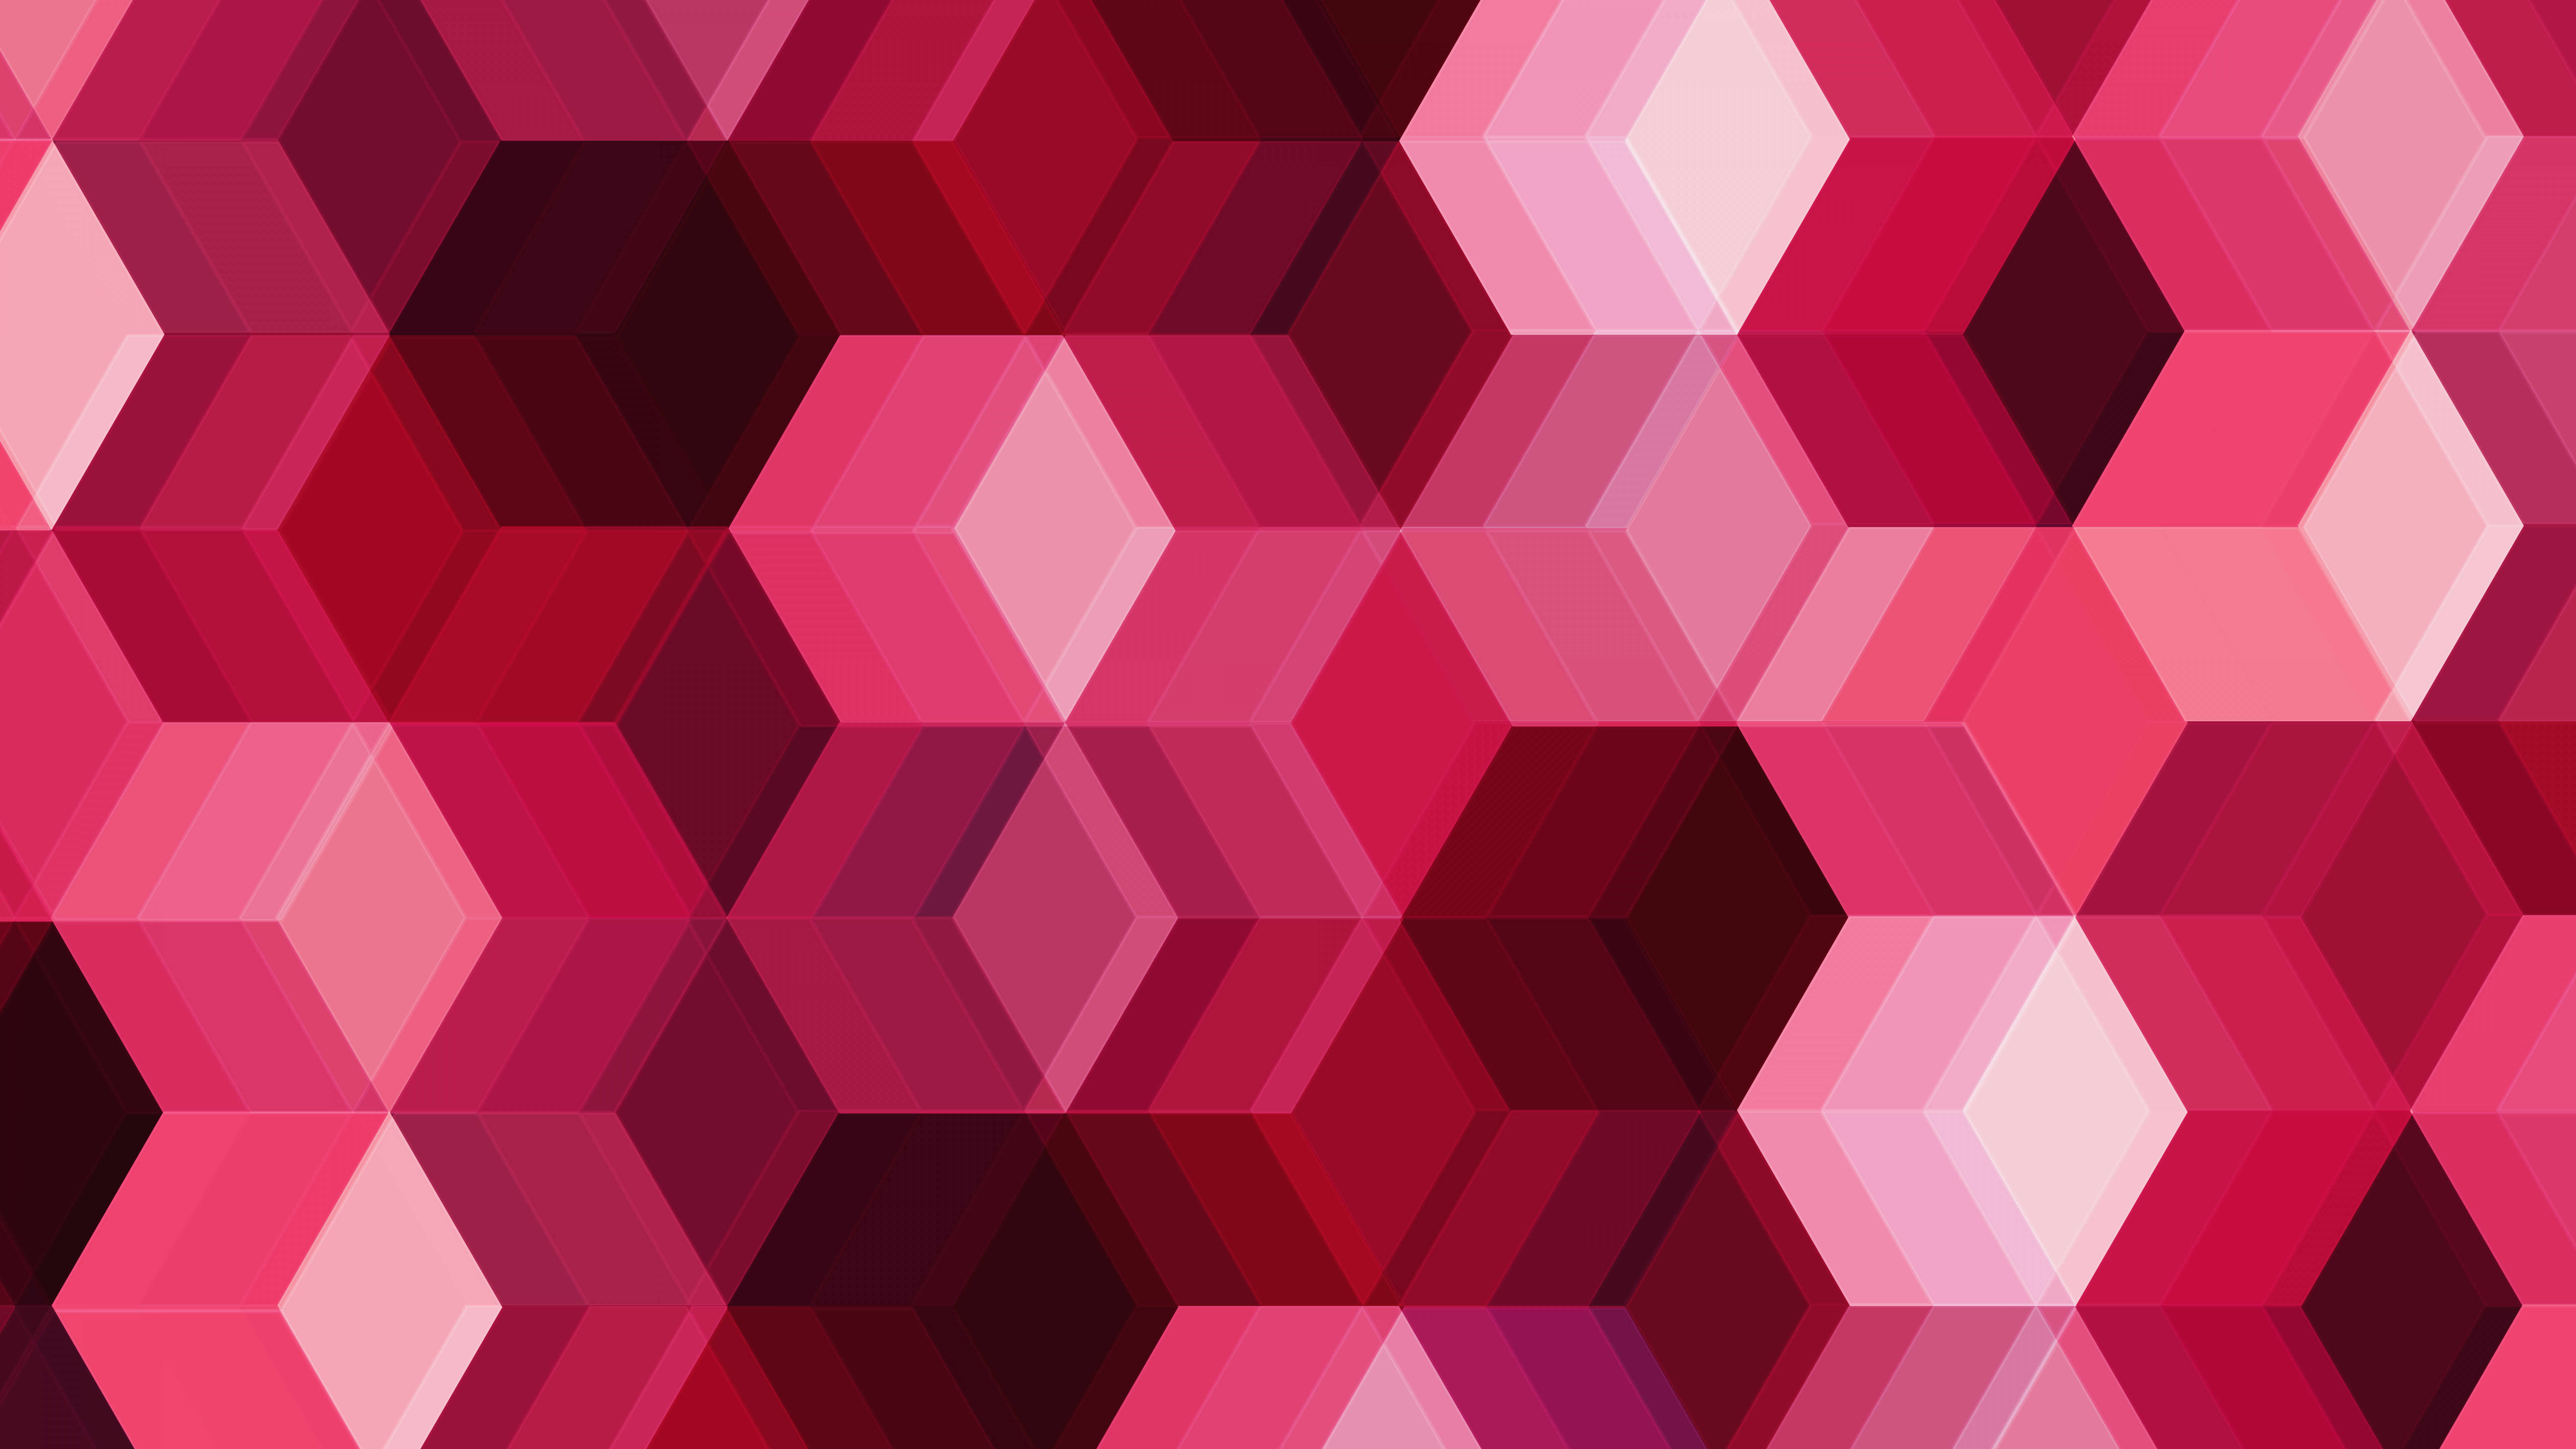 粉红色, 品红色, 对称, 立方体, 形状 壁纸 7680x4320 允许